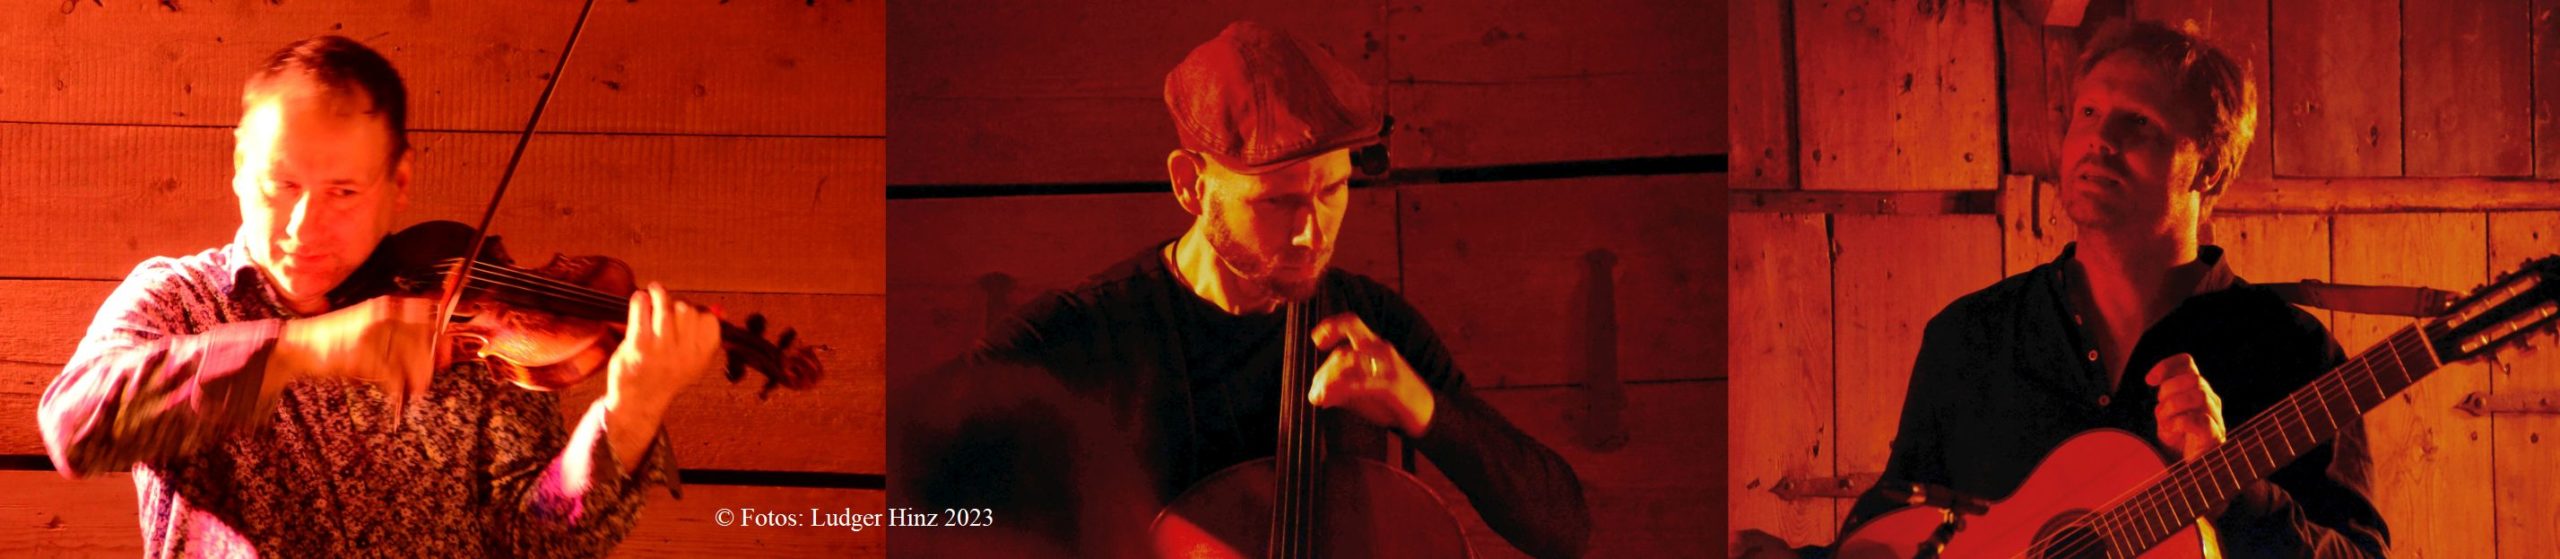 review – Saitenfest 2023 mit Florian Mayer (Geige), Matthias Hübner (Cello) und Malte Vief (Gitarre)